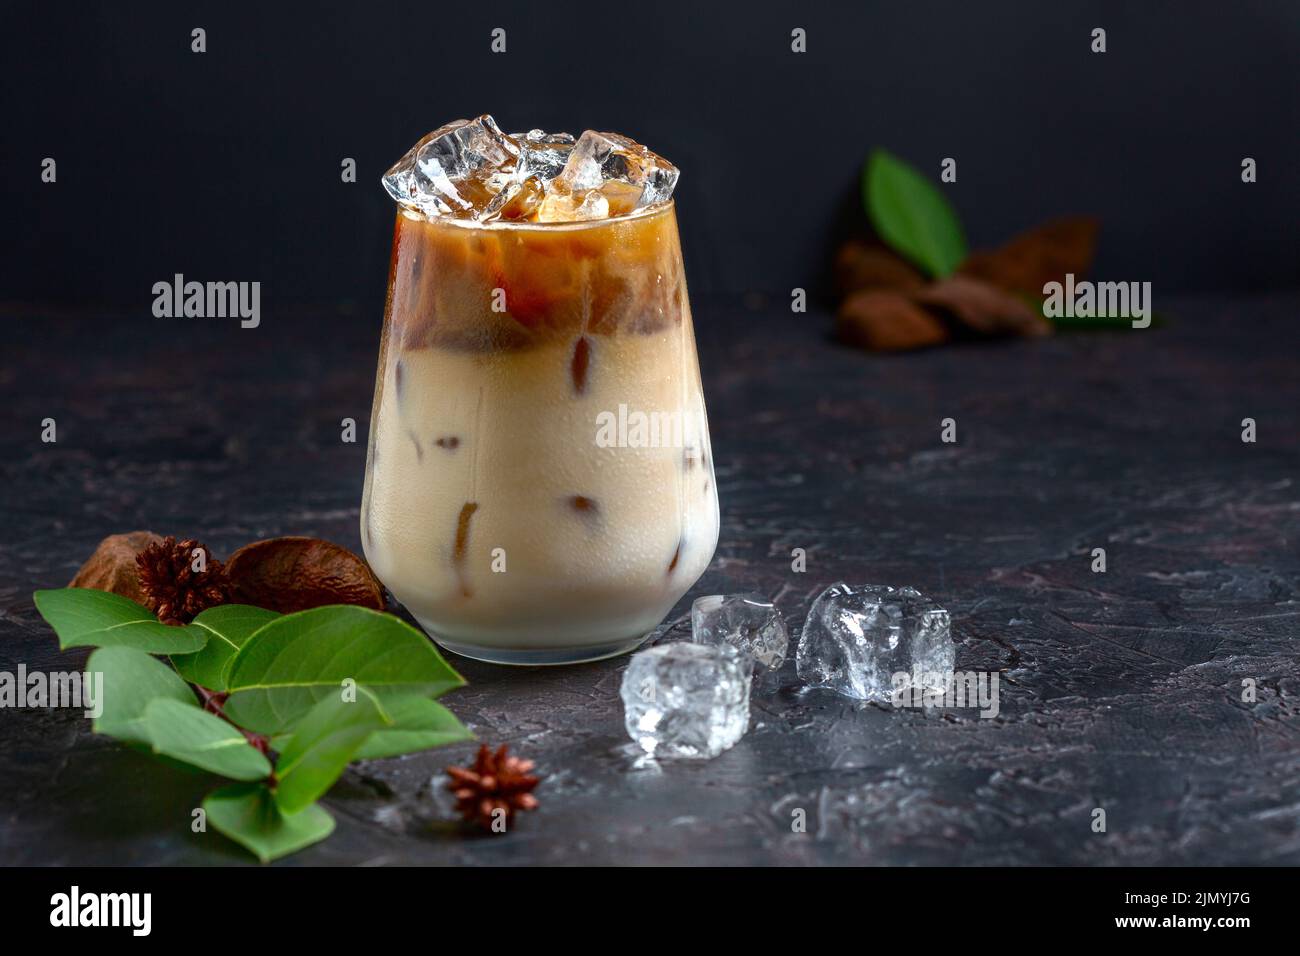 Ice coffee with cream. Stock Photo